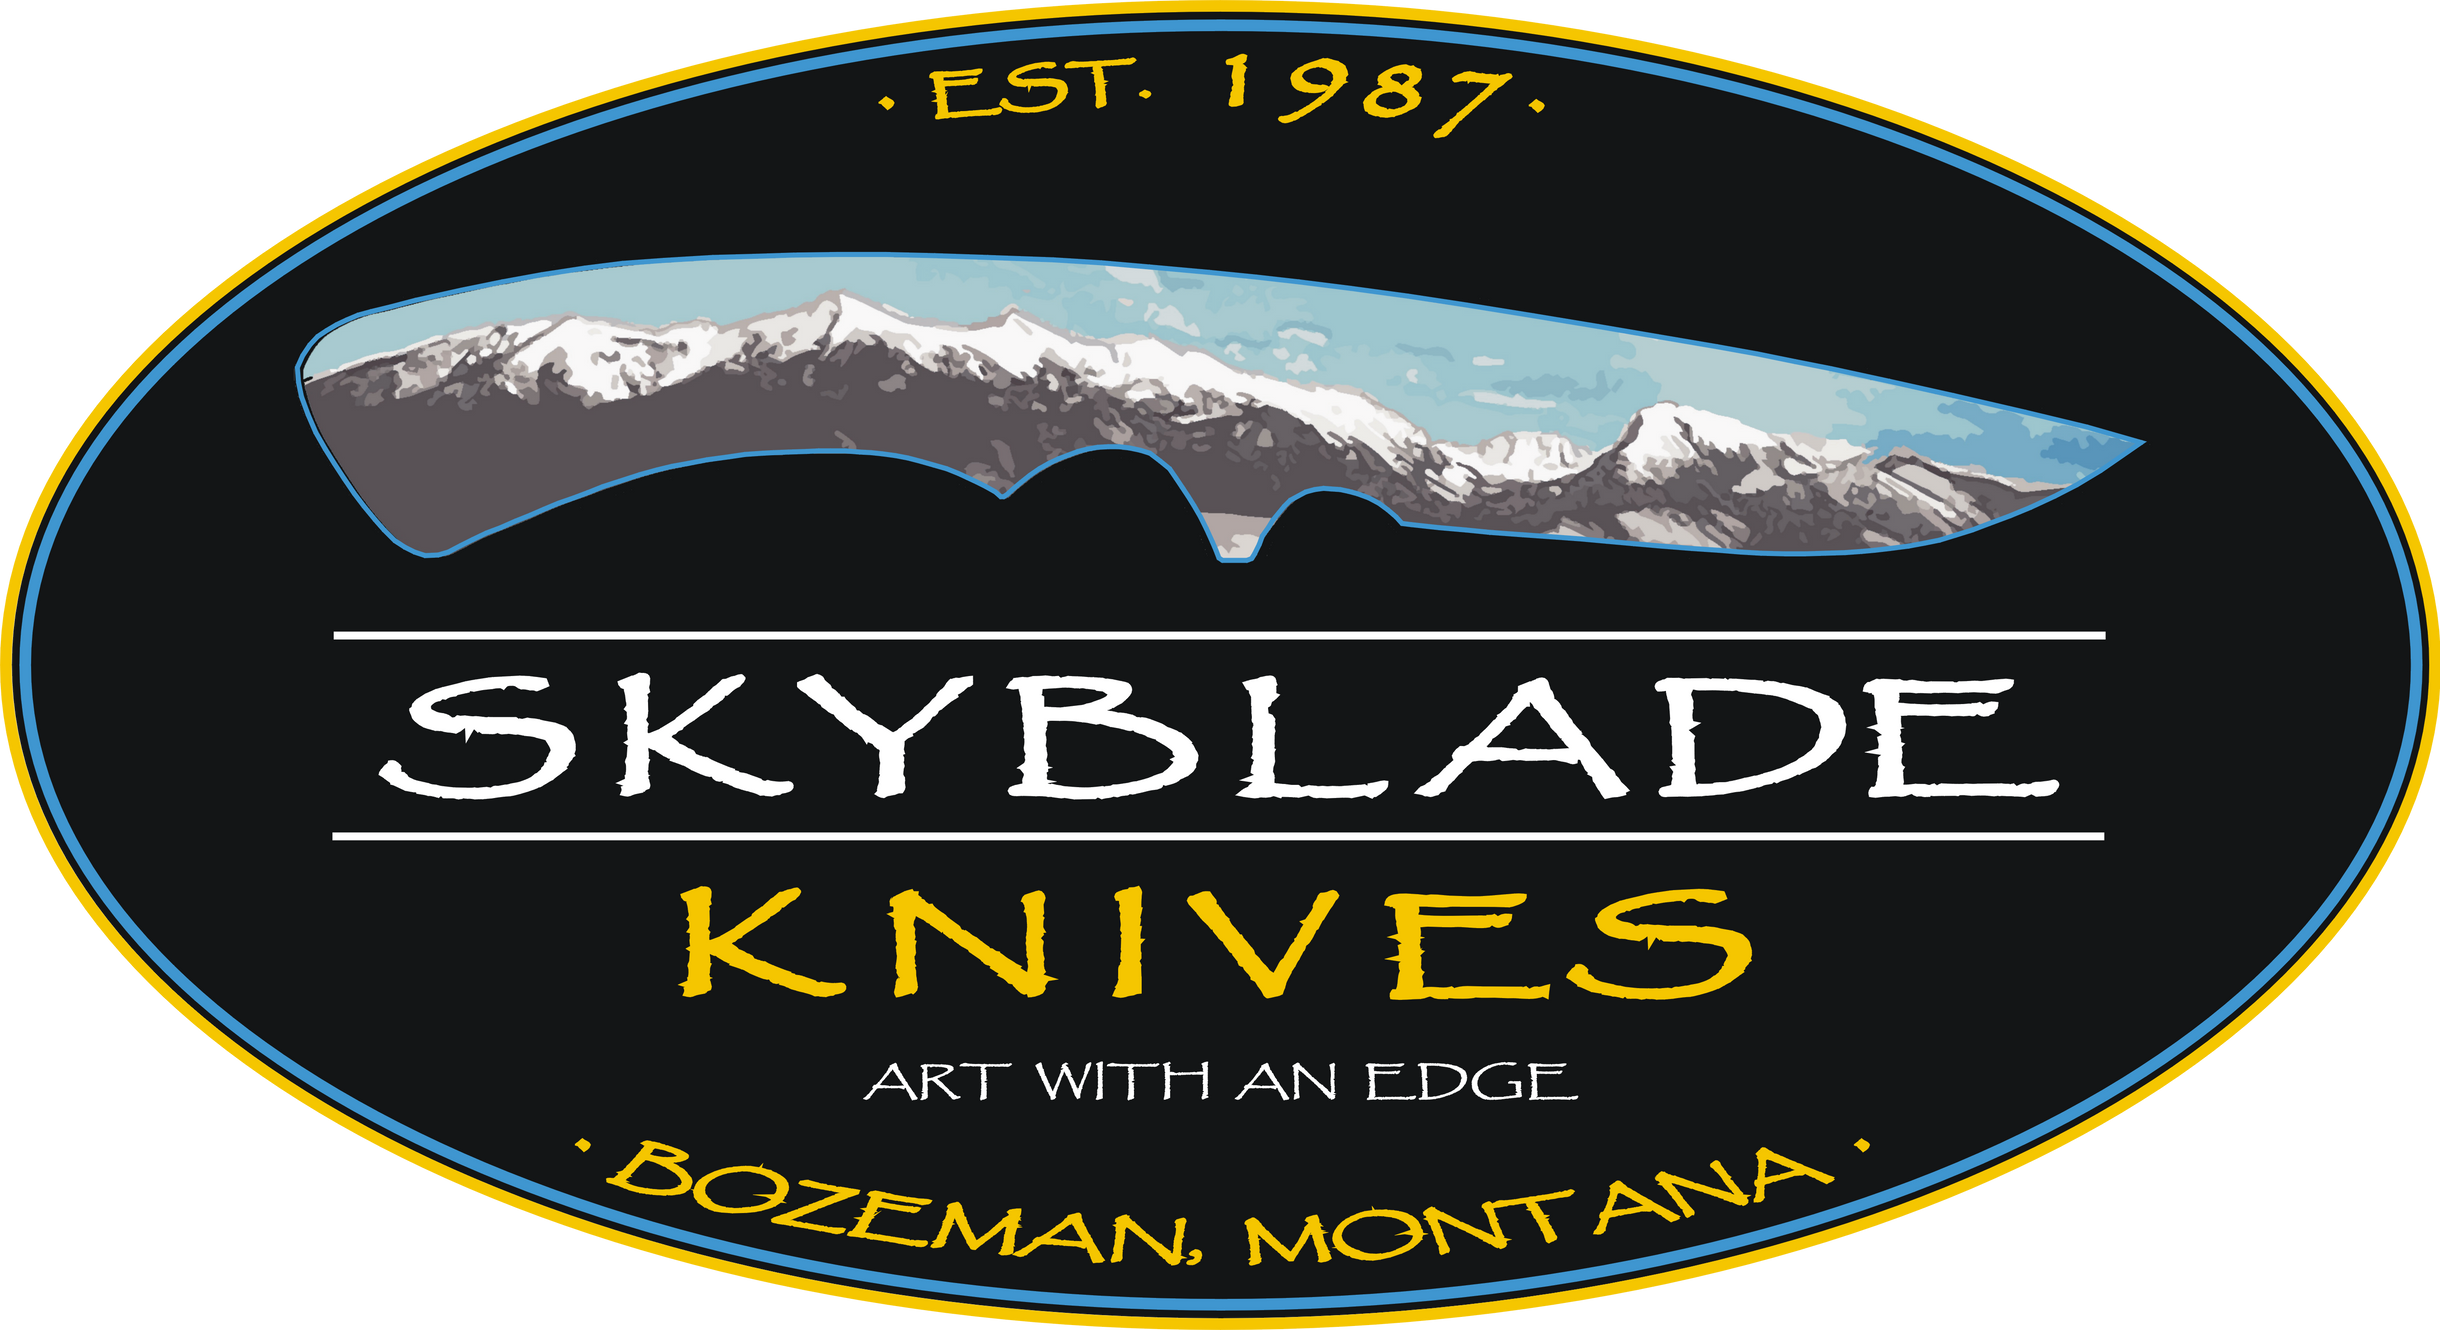 www.skybladeknives.com